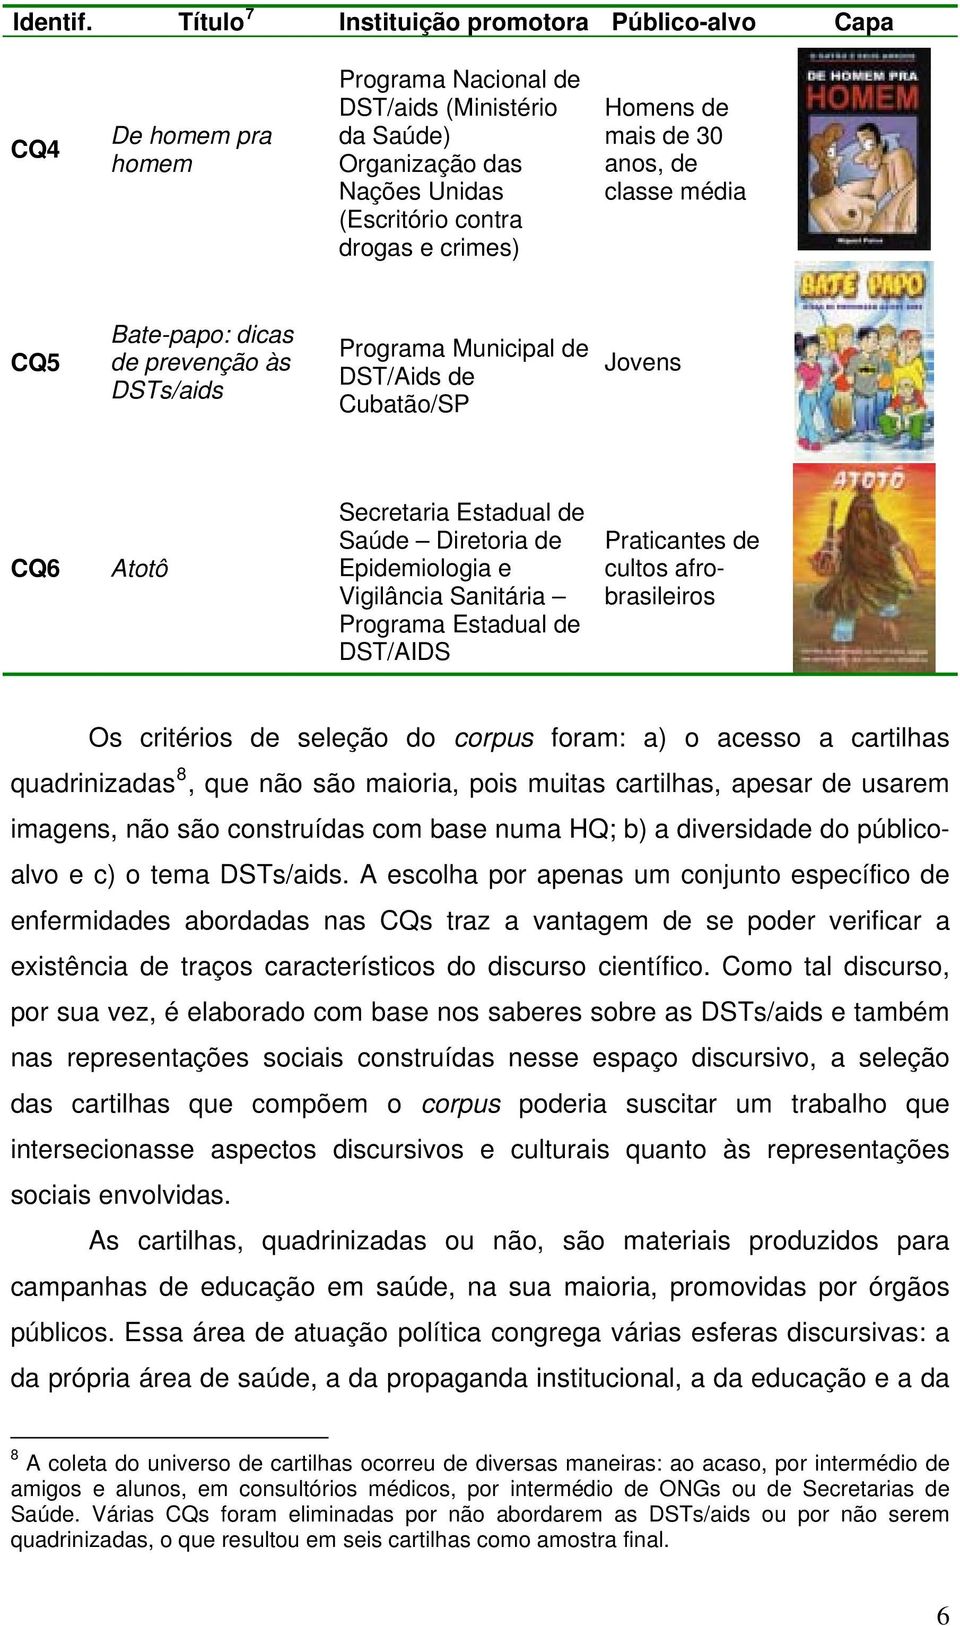 mais de 30 anos, de classe média CQ5 Bate-papo: dicas de prevenção às DSTs/aids Programa Municipal de DST/Aids de Cubatão/SP Jovens CQ6 Atotô Secretaria Estadual de Saúde Diretoria de Epidemiologia e